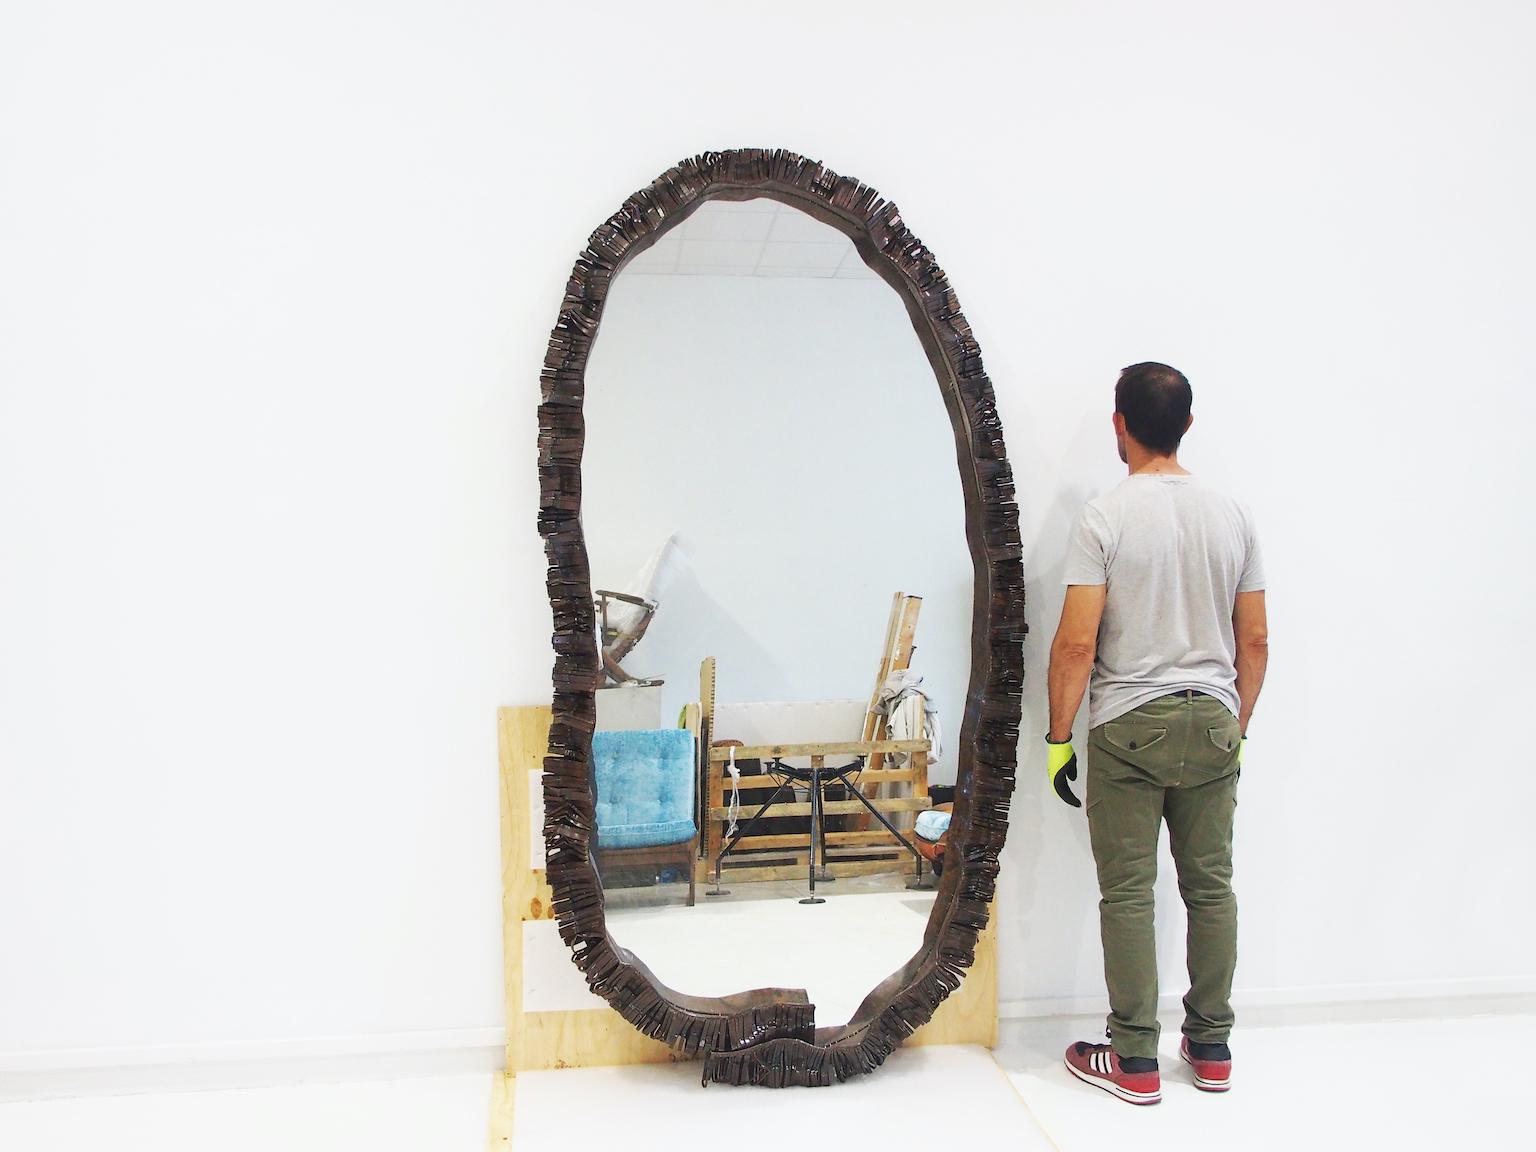 Grand miroir au sol de forme ovale organique avec bord en fer forgé. Fabriqué en Italie dans les années 1970. Légère usure due à l'âge.